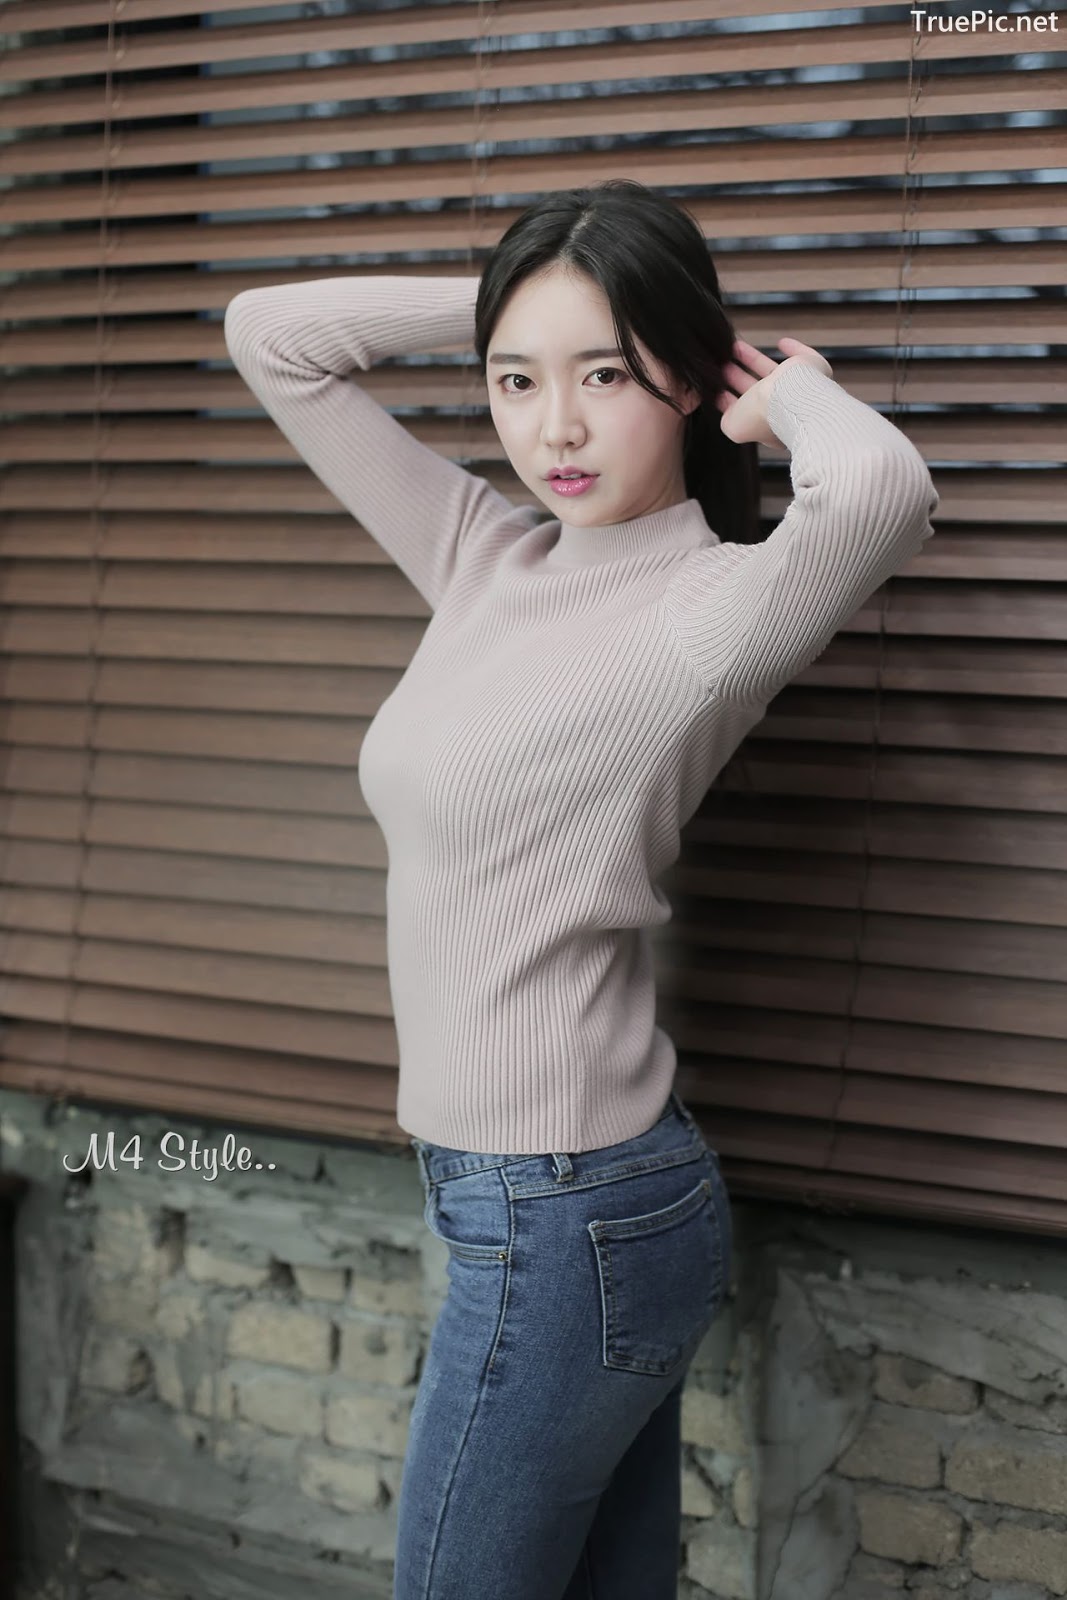 Image-Korean-Hot-Model-Go-Eun-Yang-Indoor-Photoshoot-Collection-TruePic.net- Picture-24